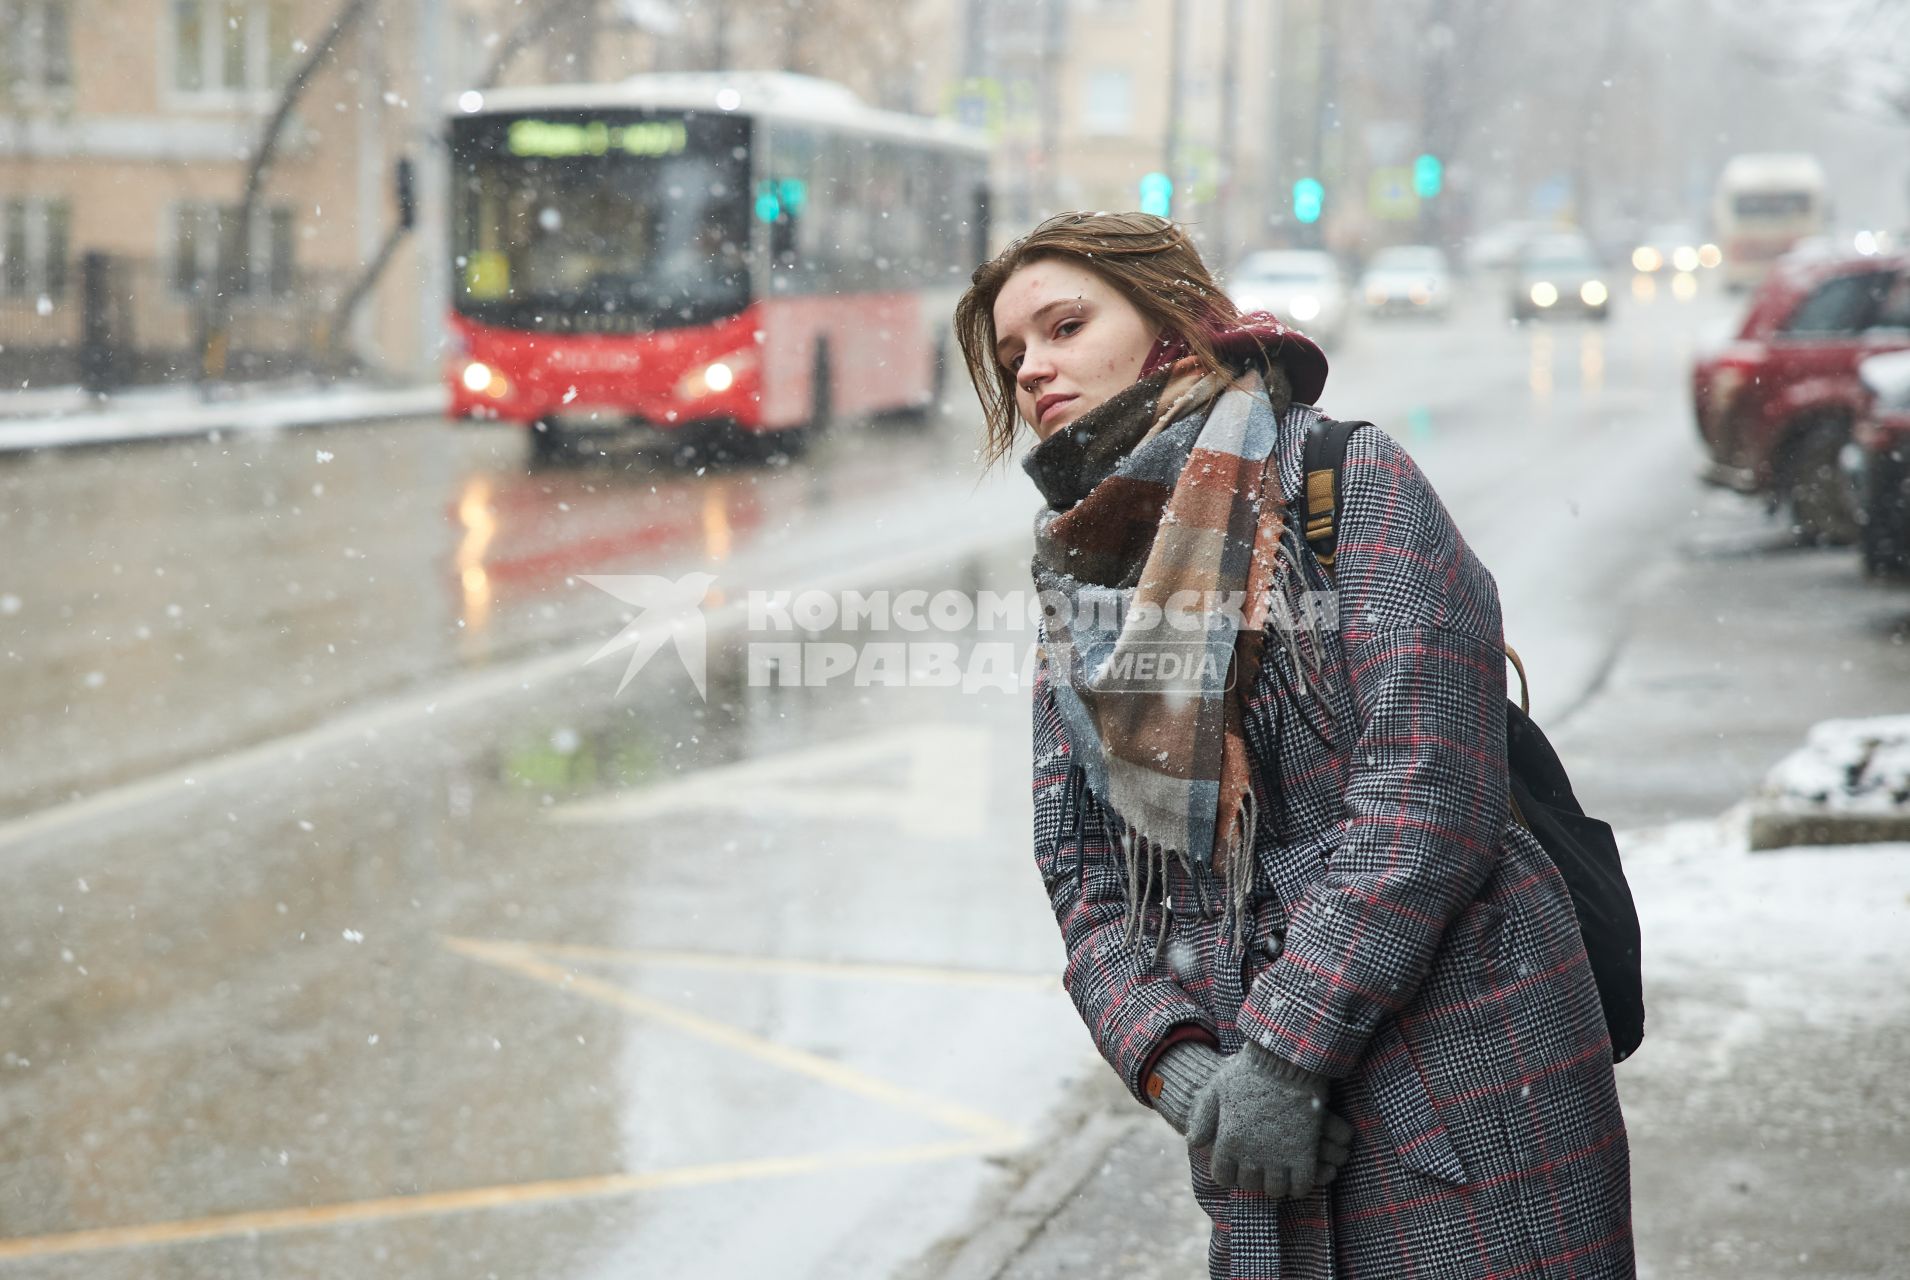 Пермь. Девушка ждет автобуса на остановке.